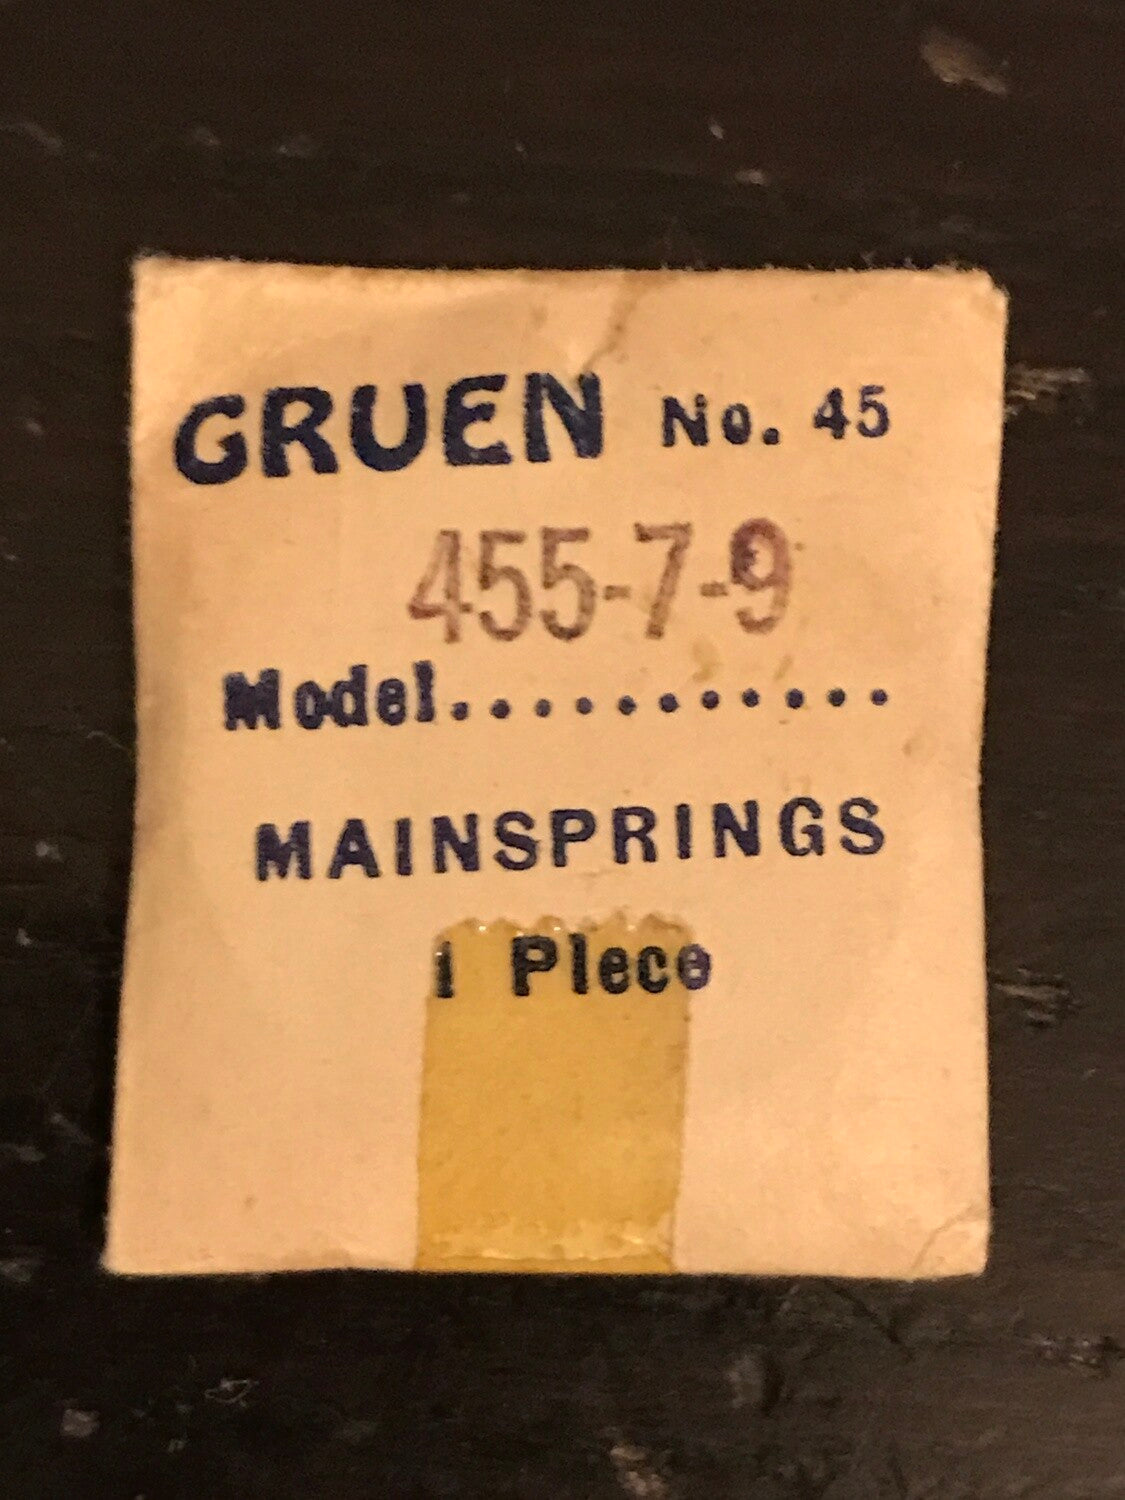 Gruen Factory Mainspring for Gruen caliber 455, 457, 459 - steel